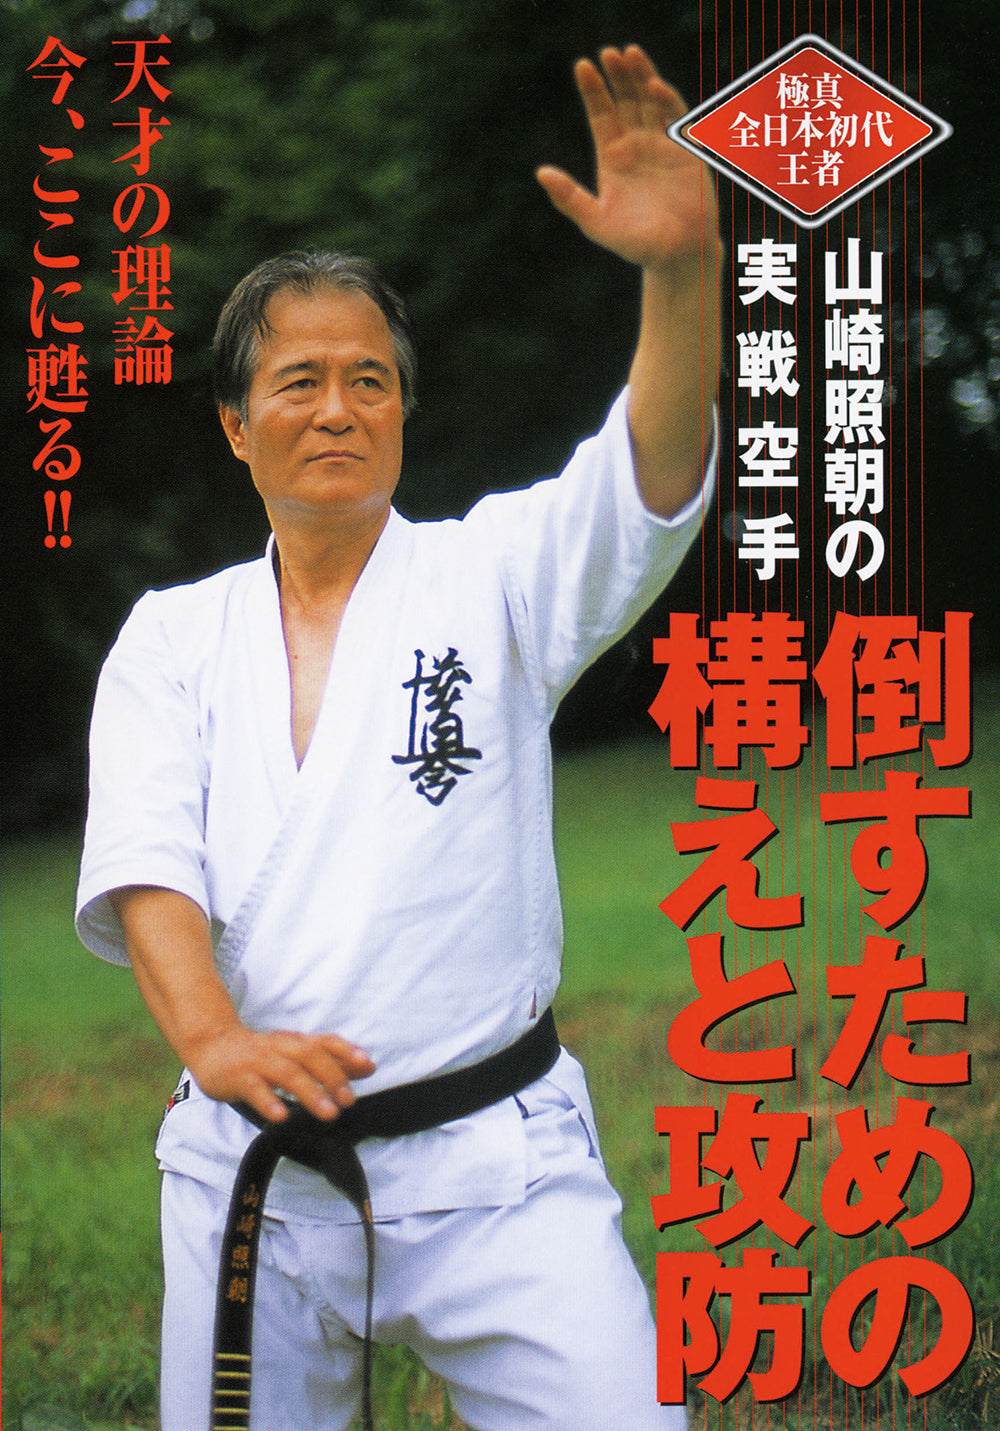 DVD de Karate real para ataque y defensa de Akira Yamazaki